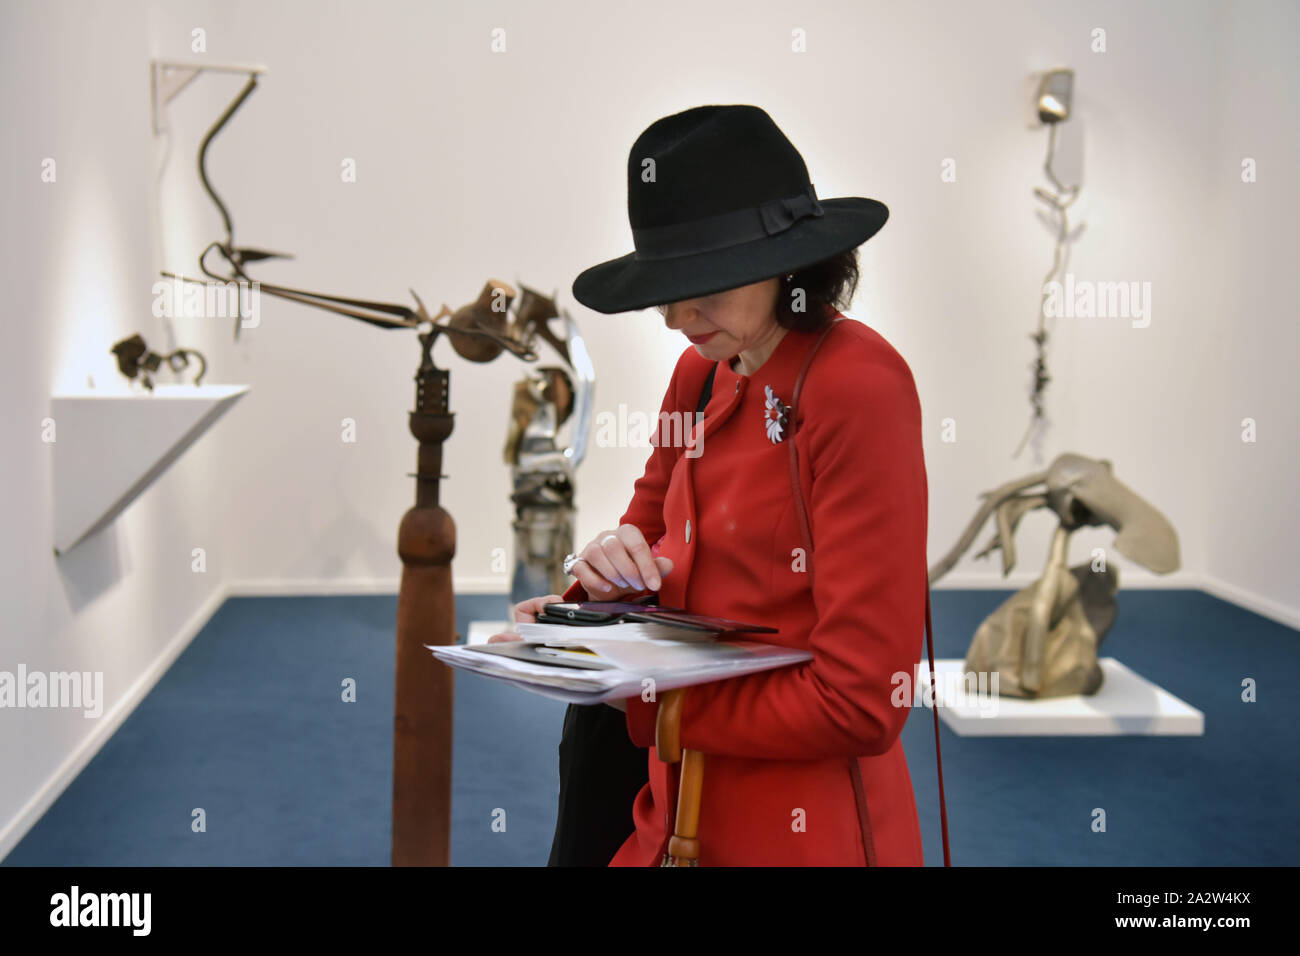 Mitglieder der Öffentlichkeit, Kunstliebhaber und Sammler nehmen an der Eröffnung der Kunstmesse Freize Meister im Regent's Park, London, wo Galerien aus Stockfoto